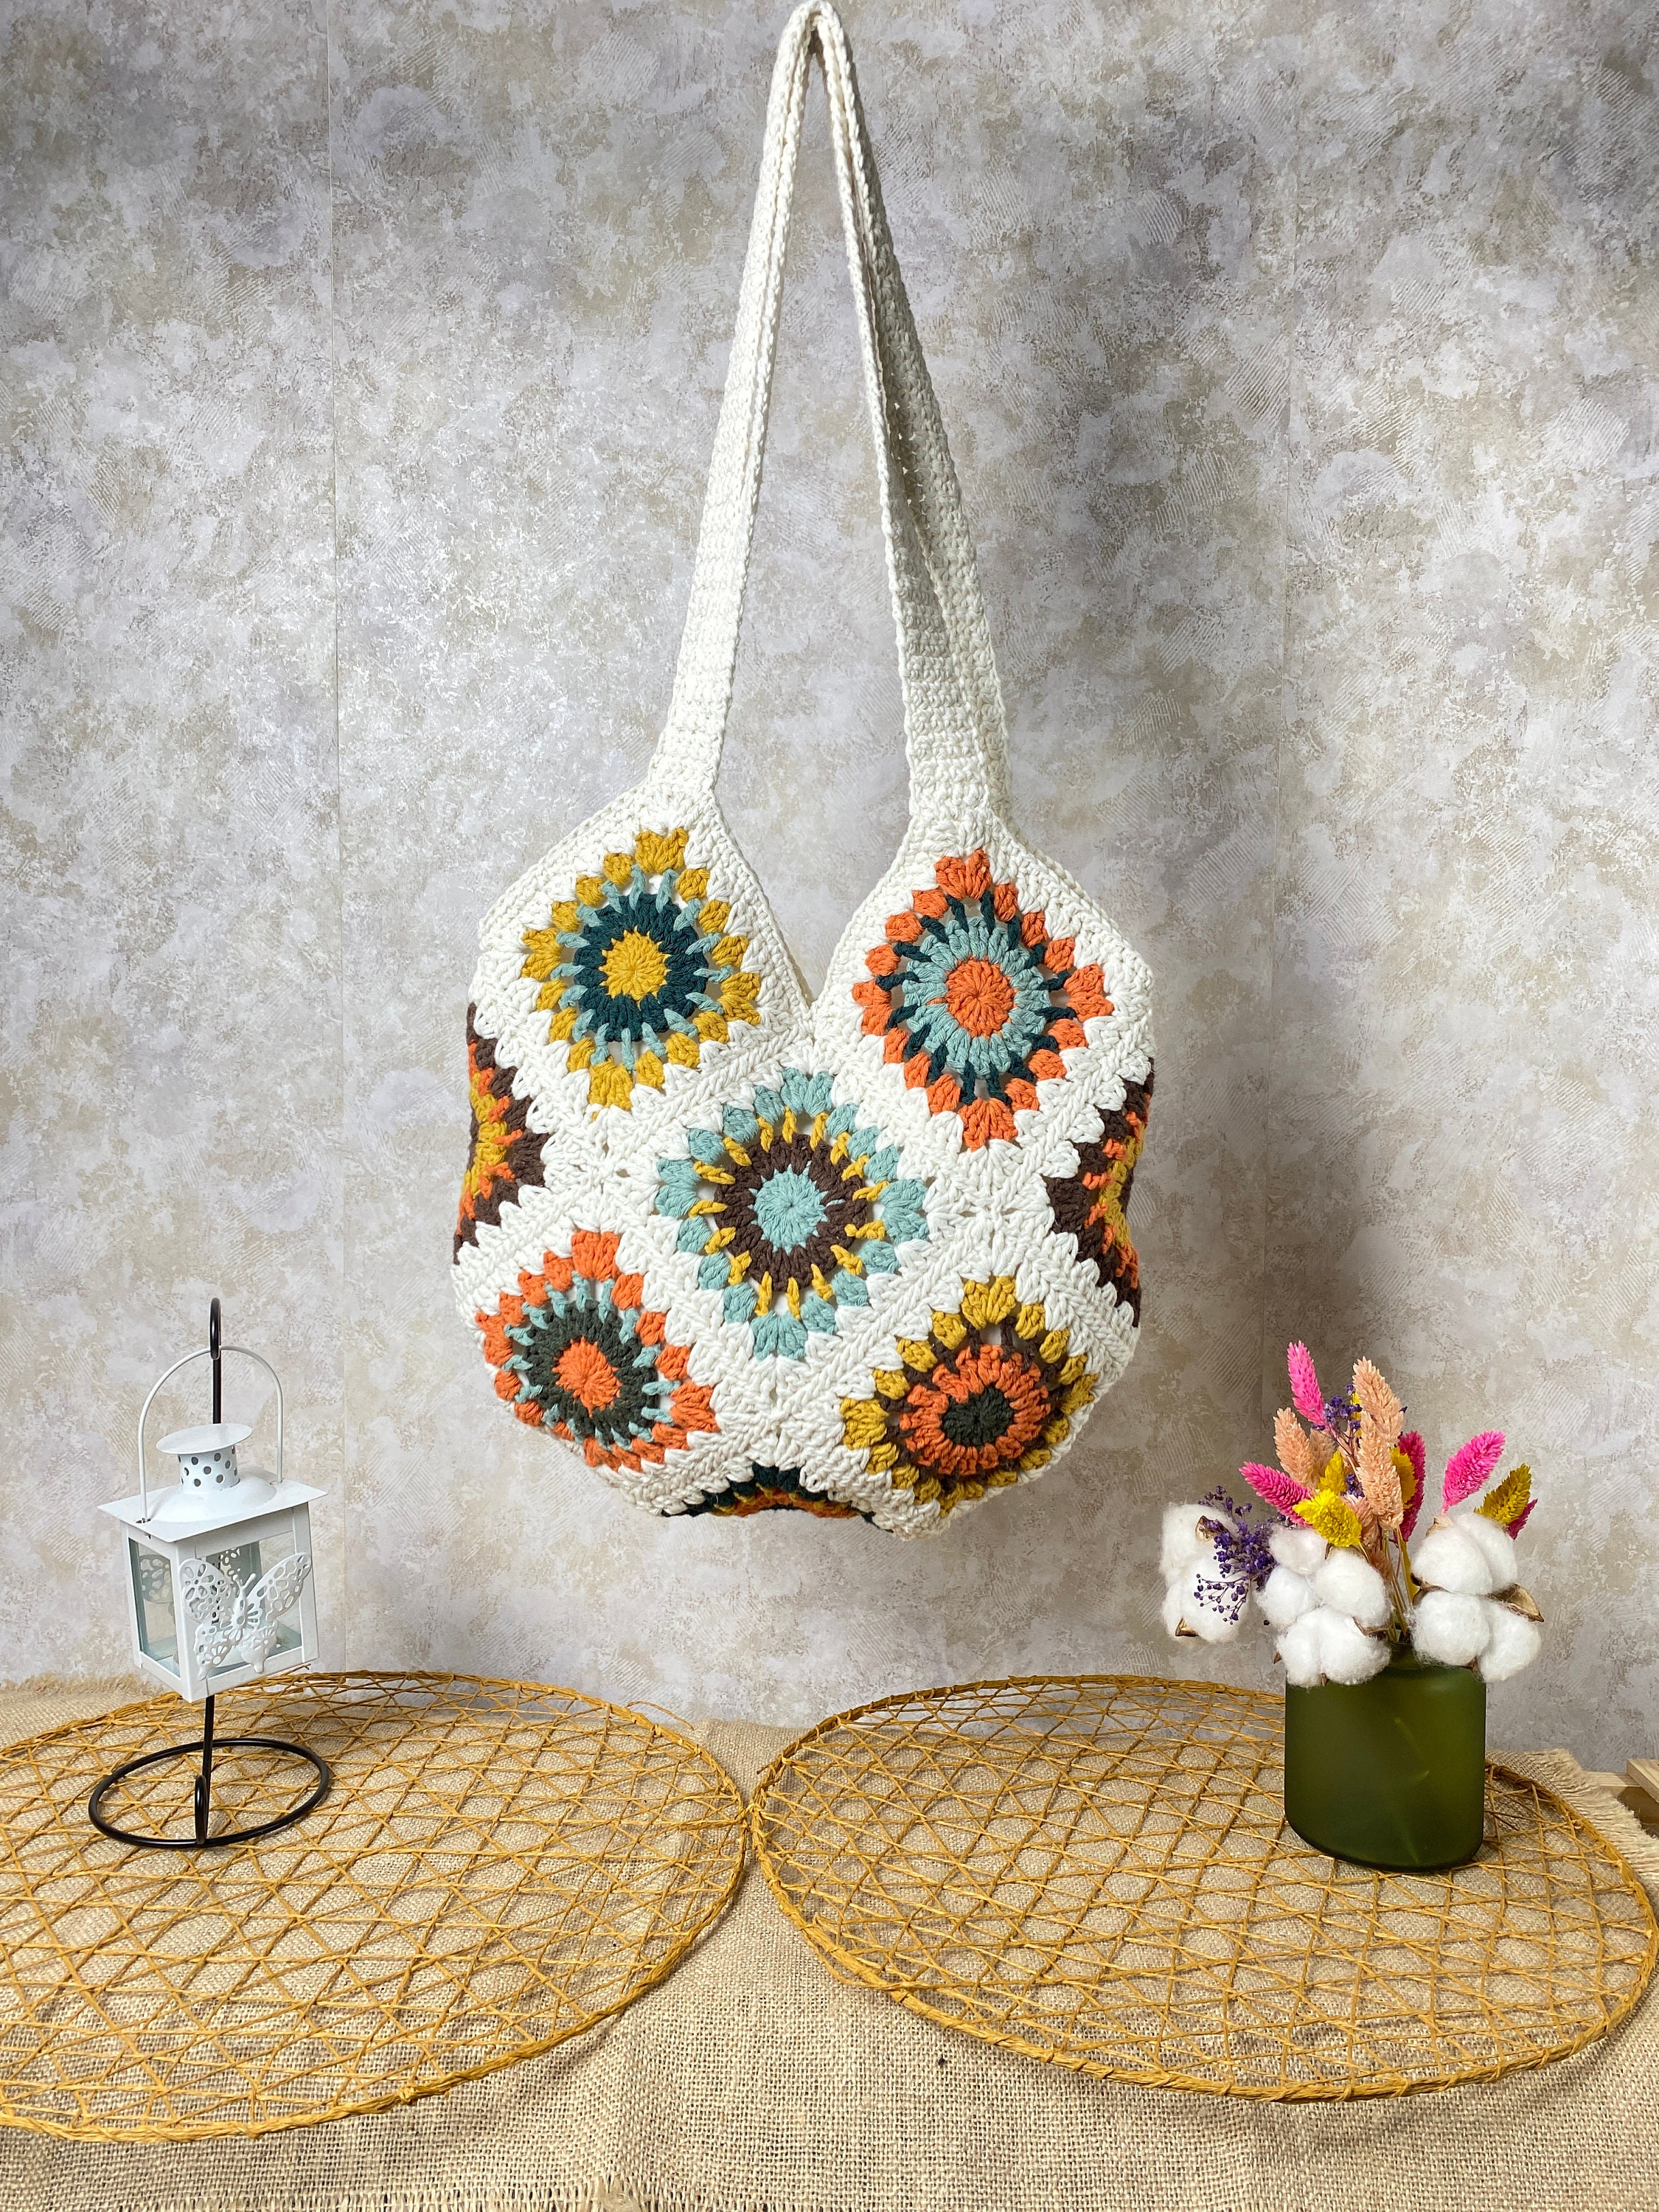 Crochet Bag, Granny Square Bag, Handmade Bag, Gift for Birthday